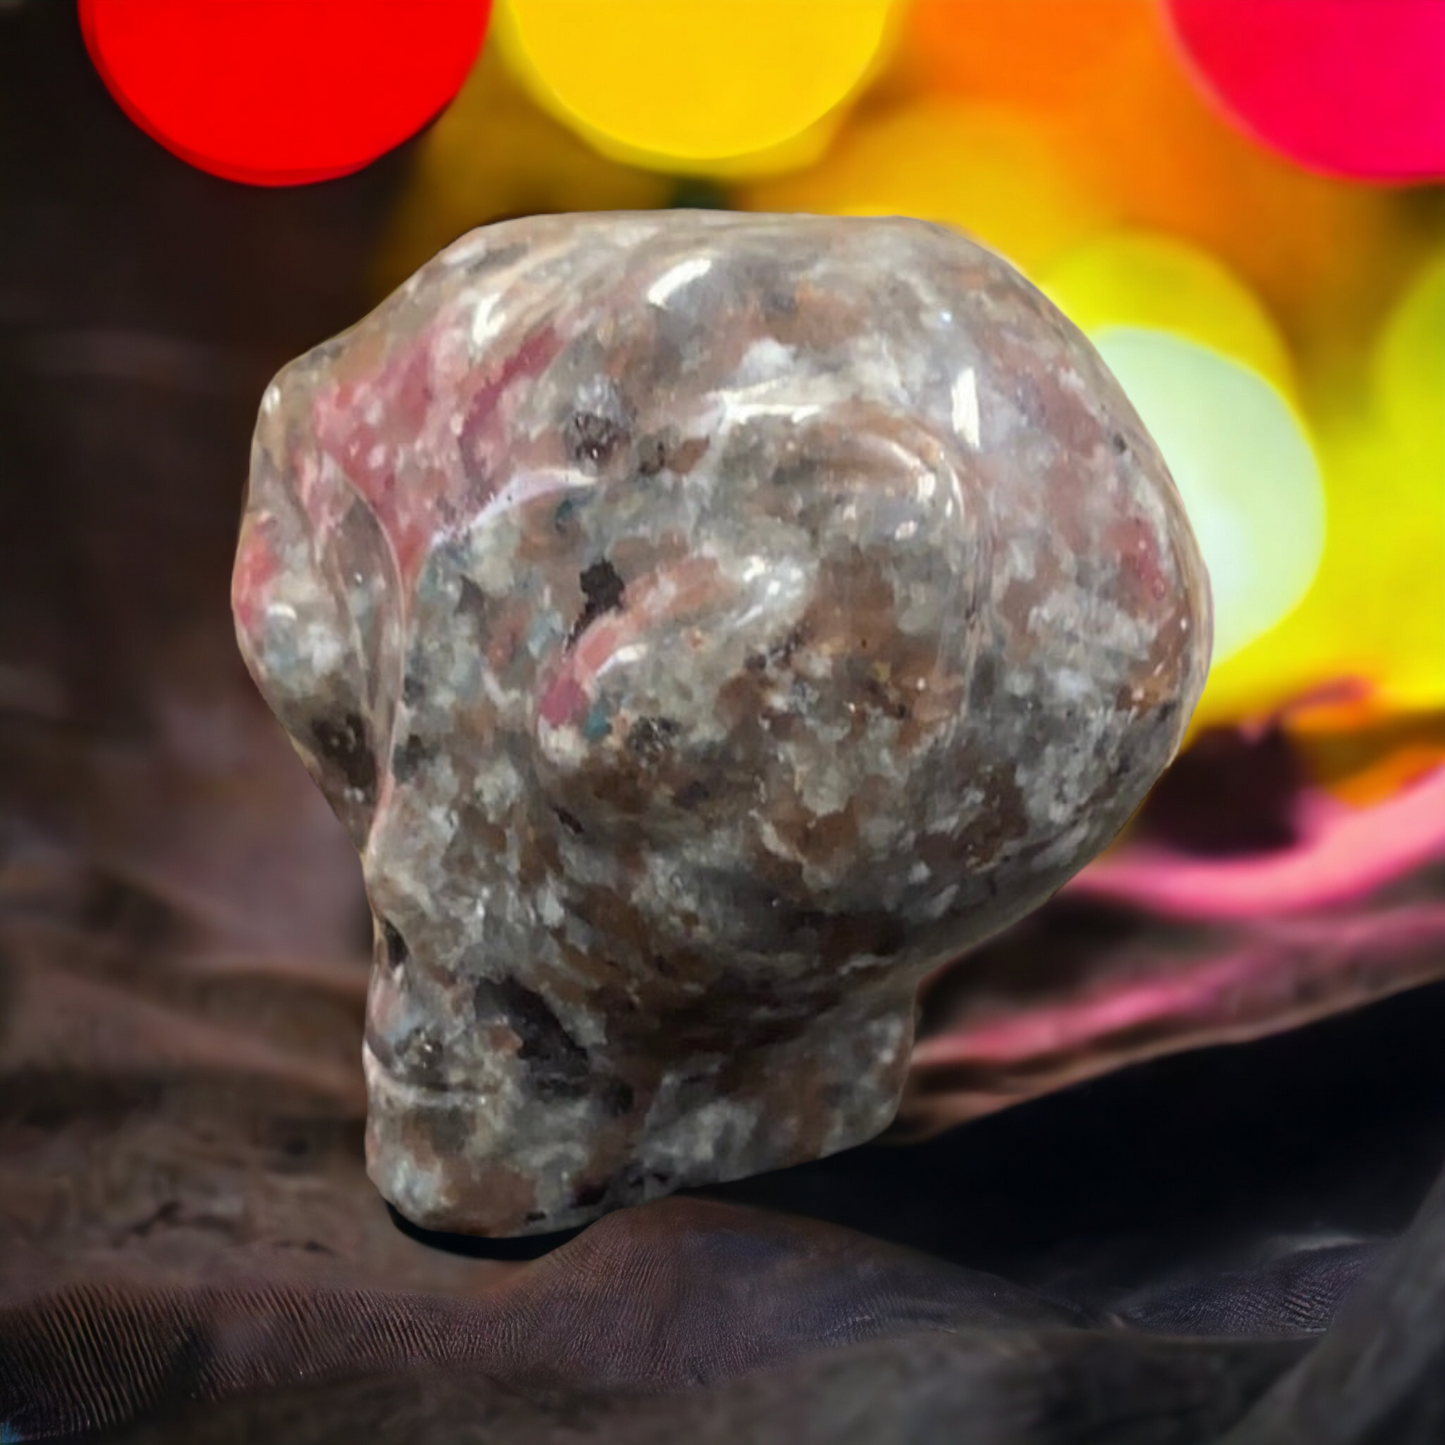 Yooperlite ET skull